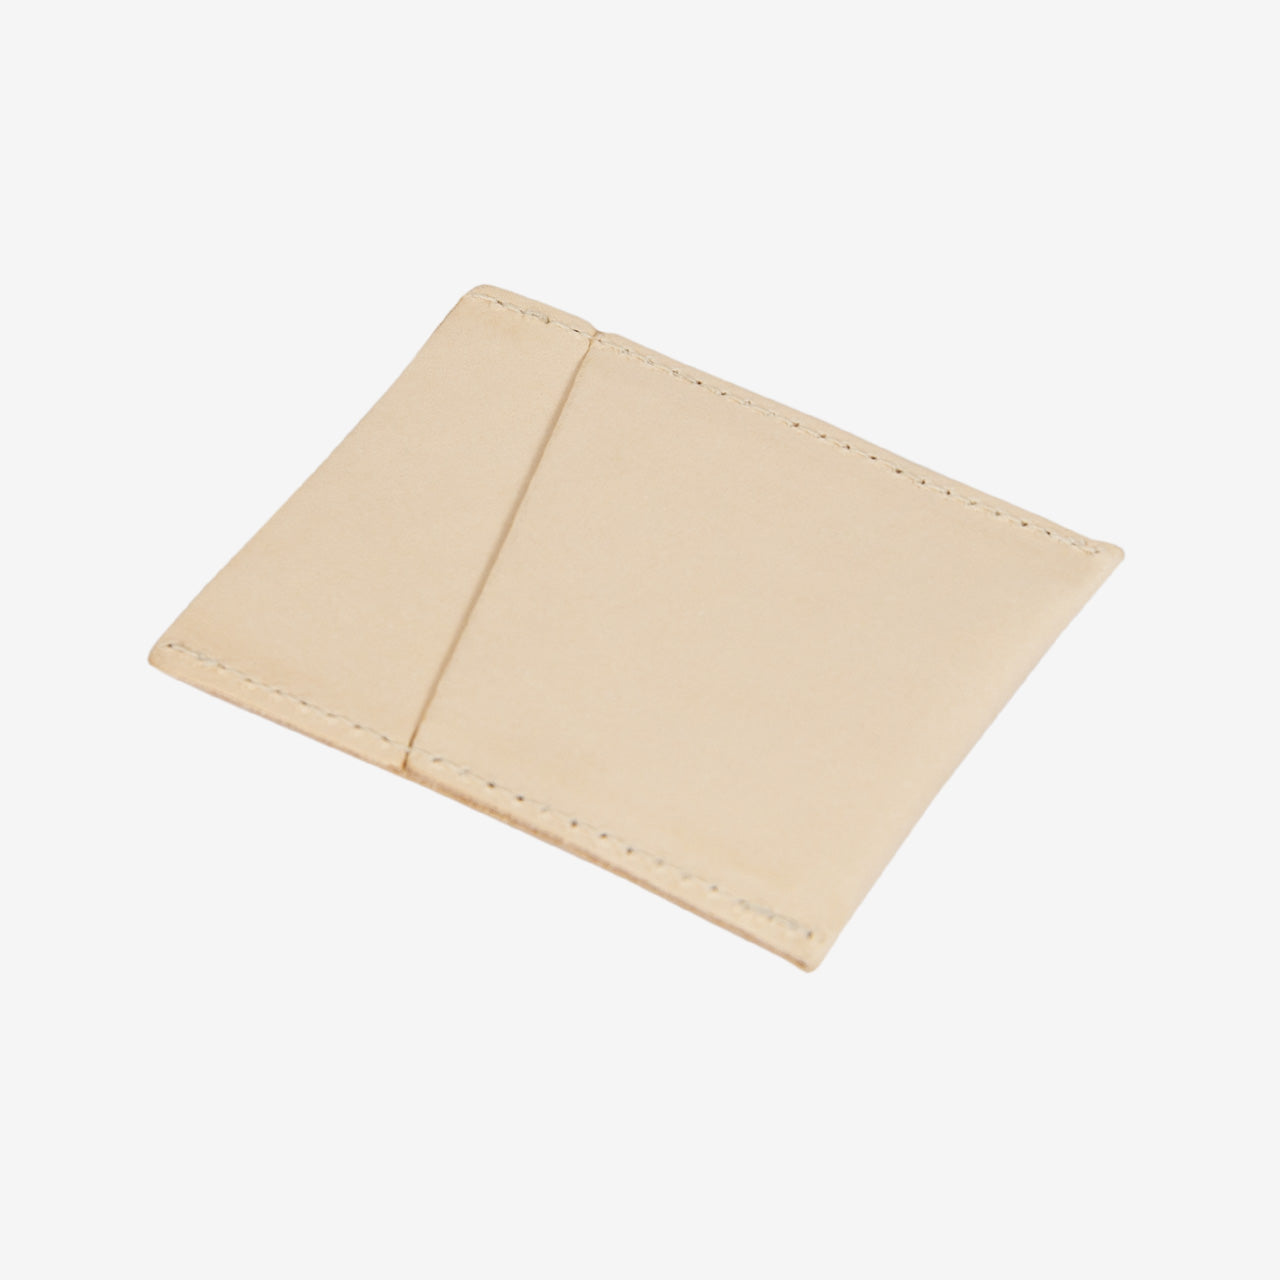 sleepwalk ltd card case veg tan leather